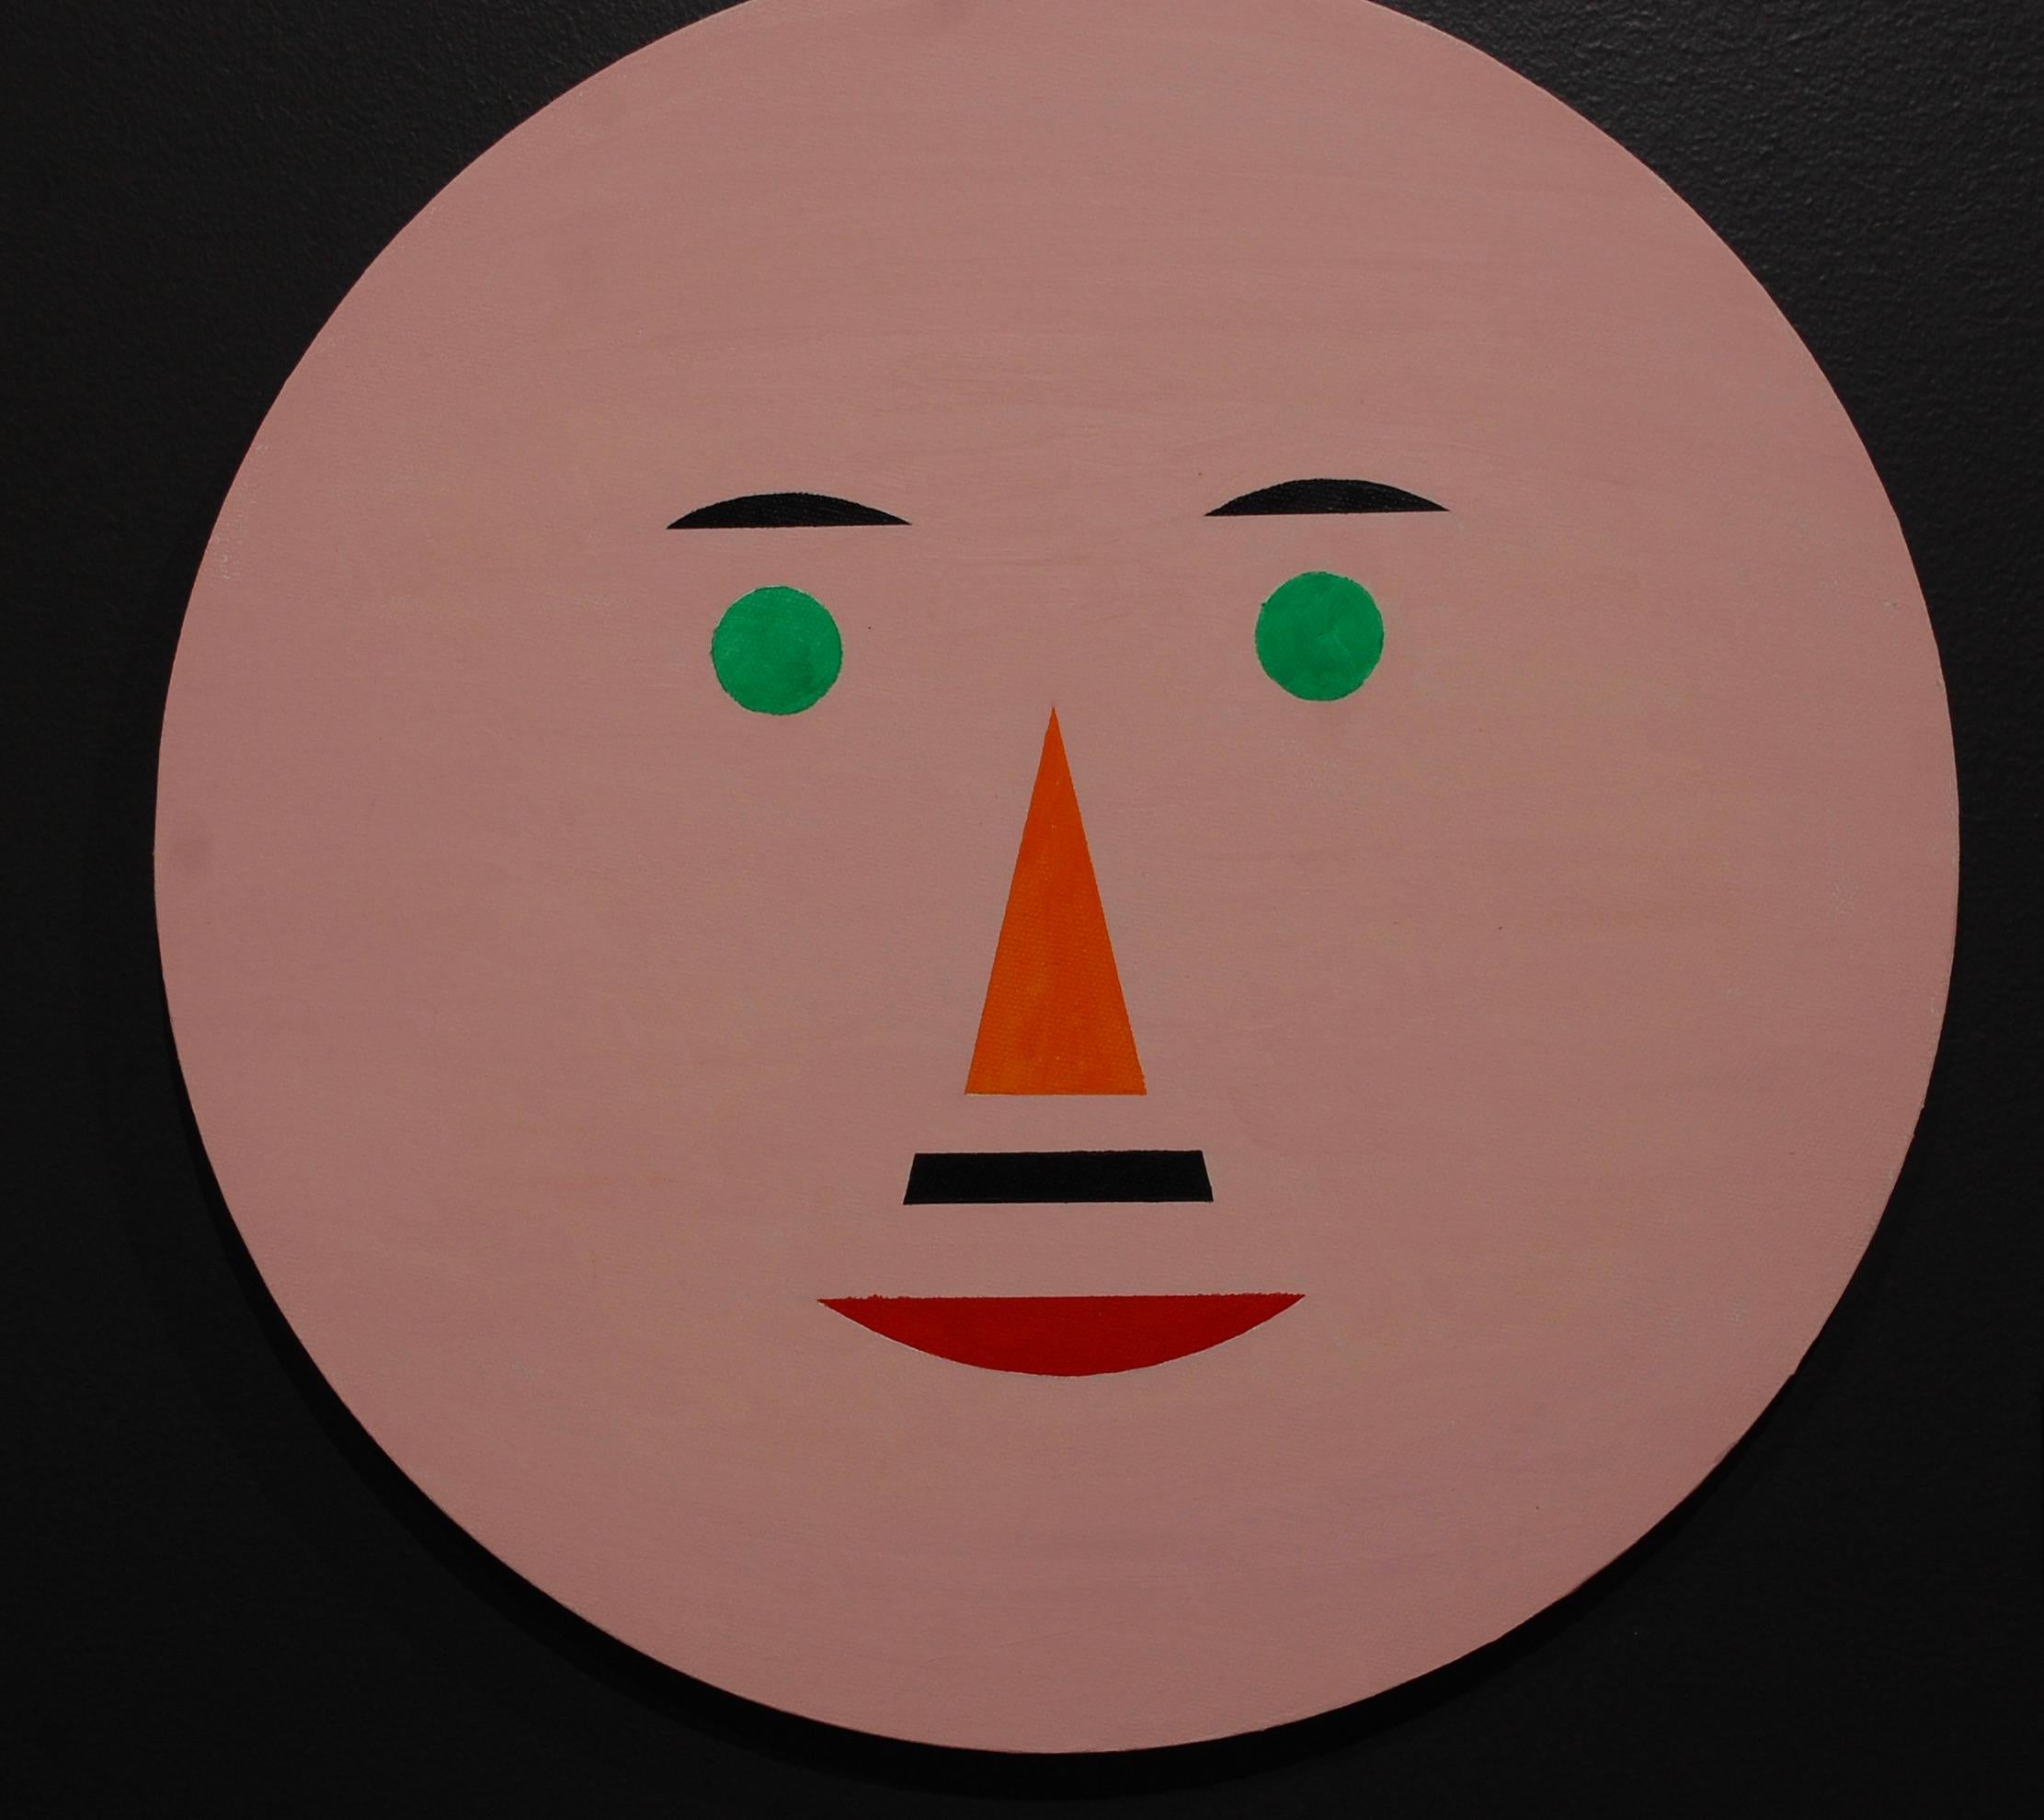 Jaro Abstract Painting – Lächeln und glücklich sein #2